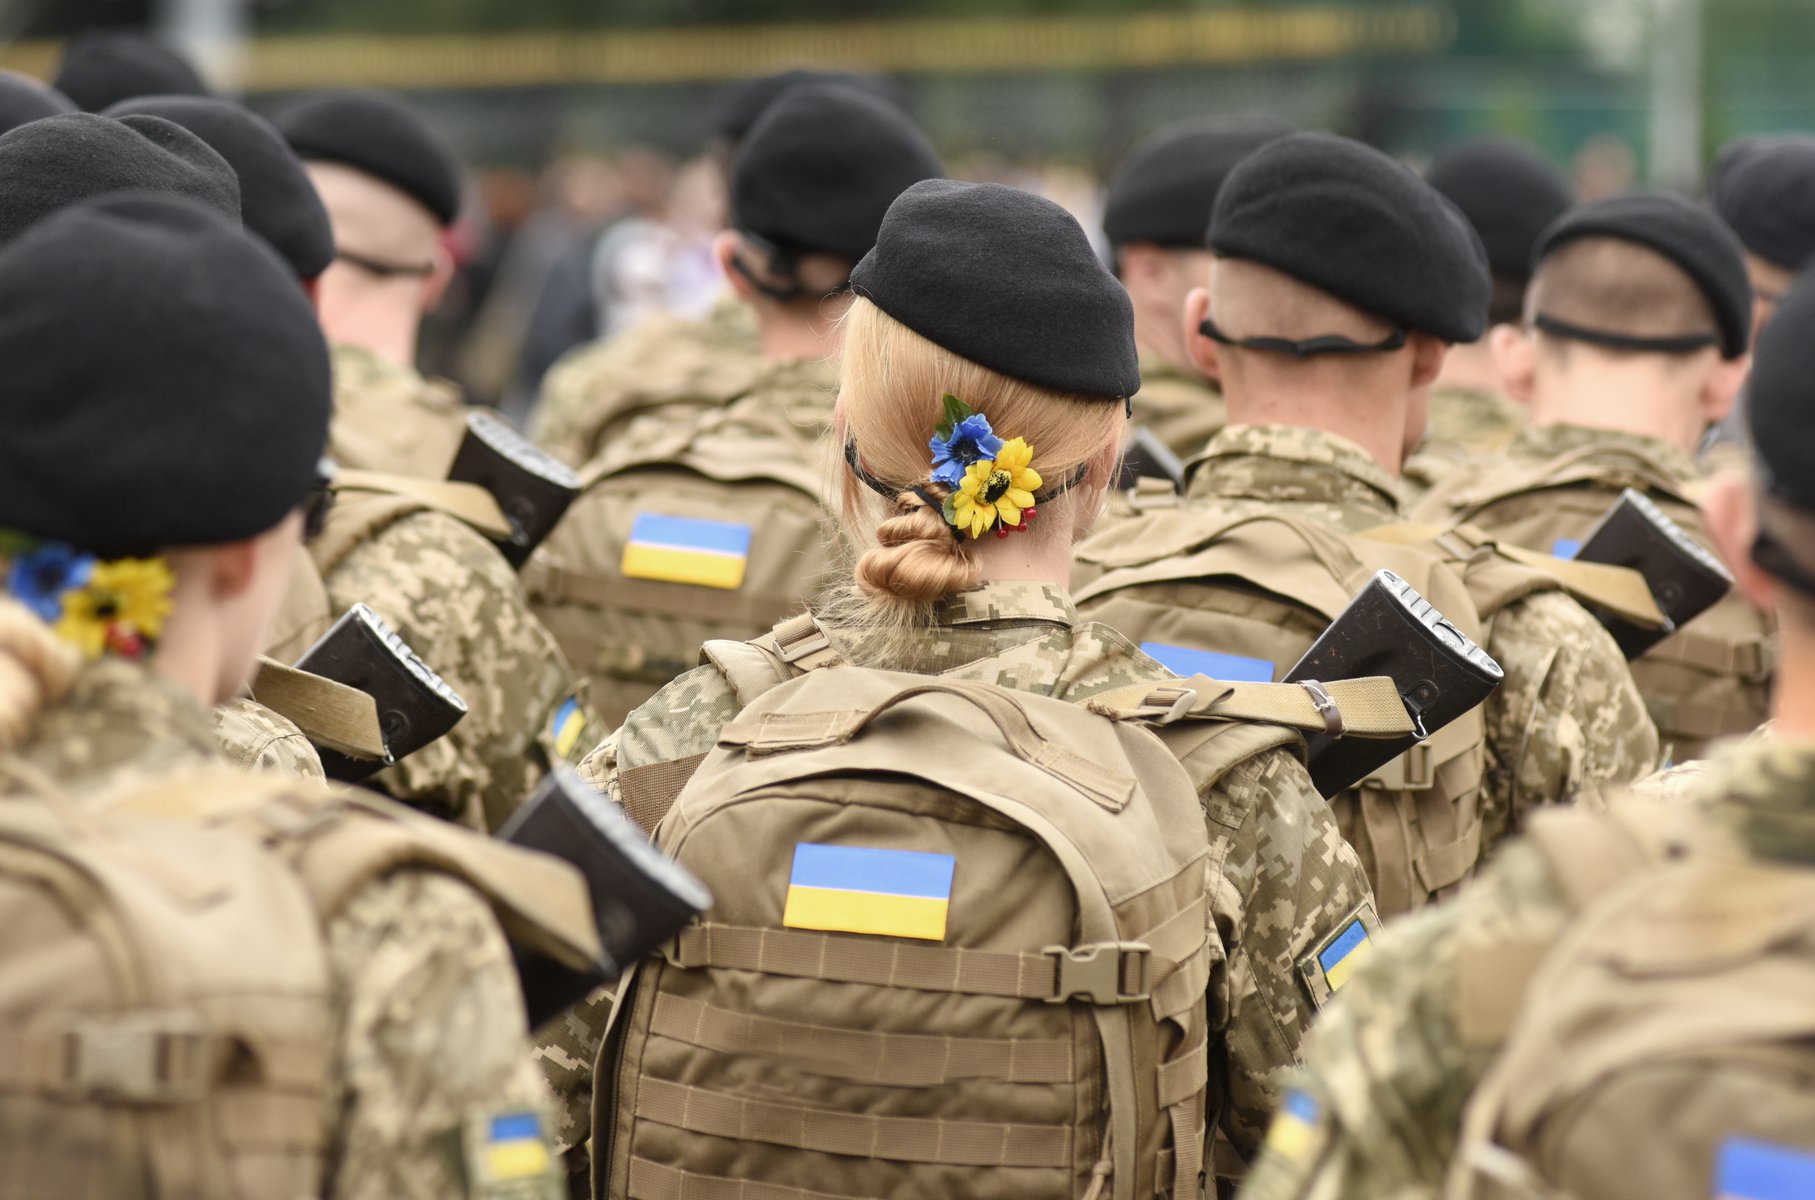 24/02/2023: Ένας χρόνος από τη ρωσική εισβολή στην Ουκρανία – Το θάυμα του Ζελένσκι και η πανωλεθρία του Πούτιν